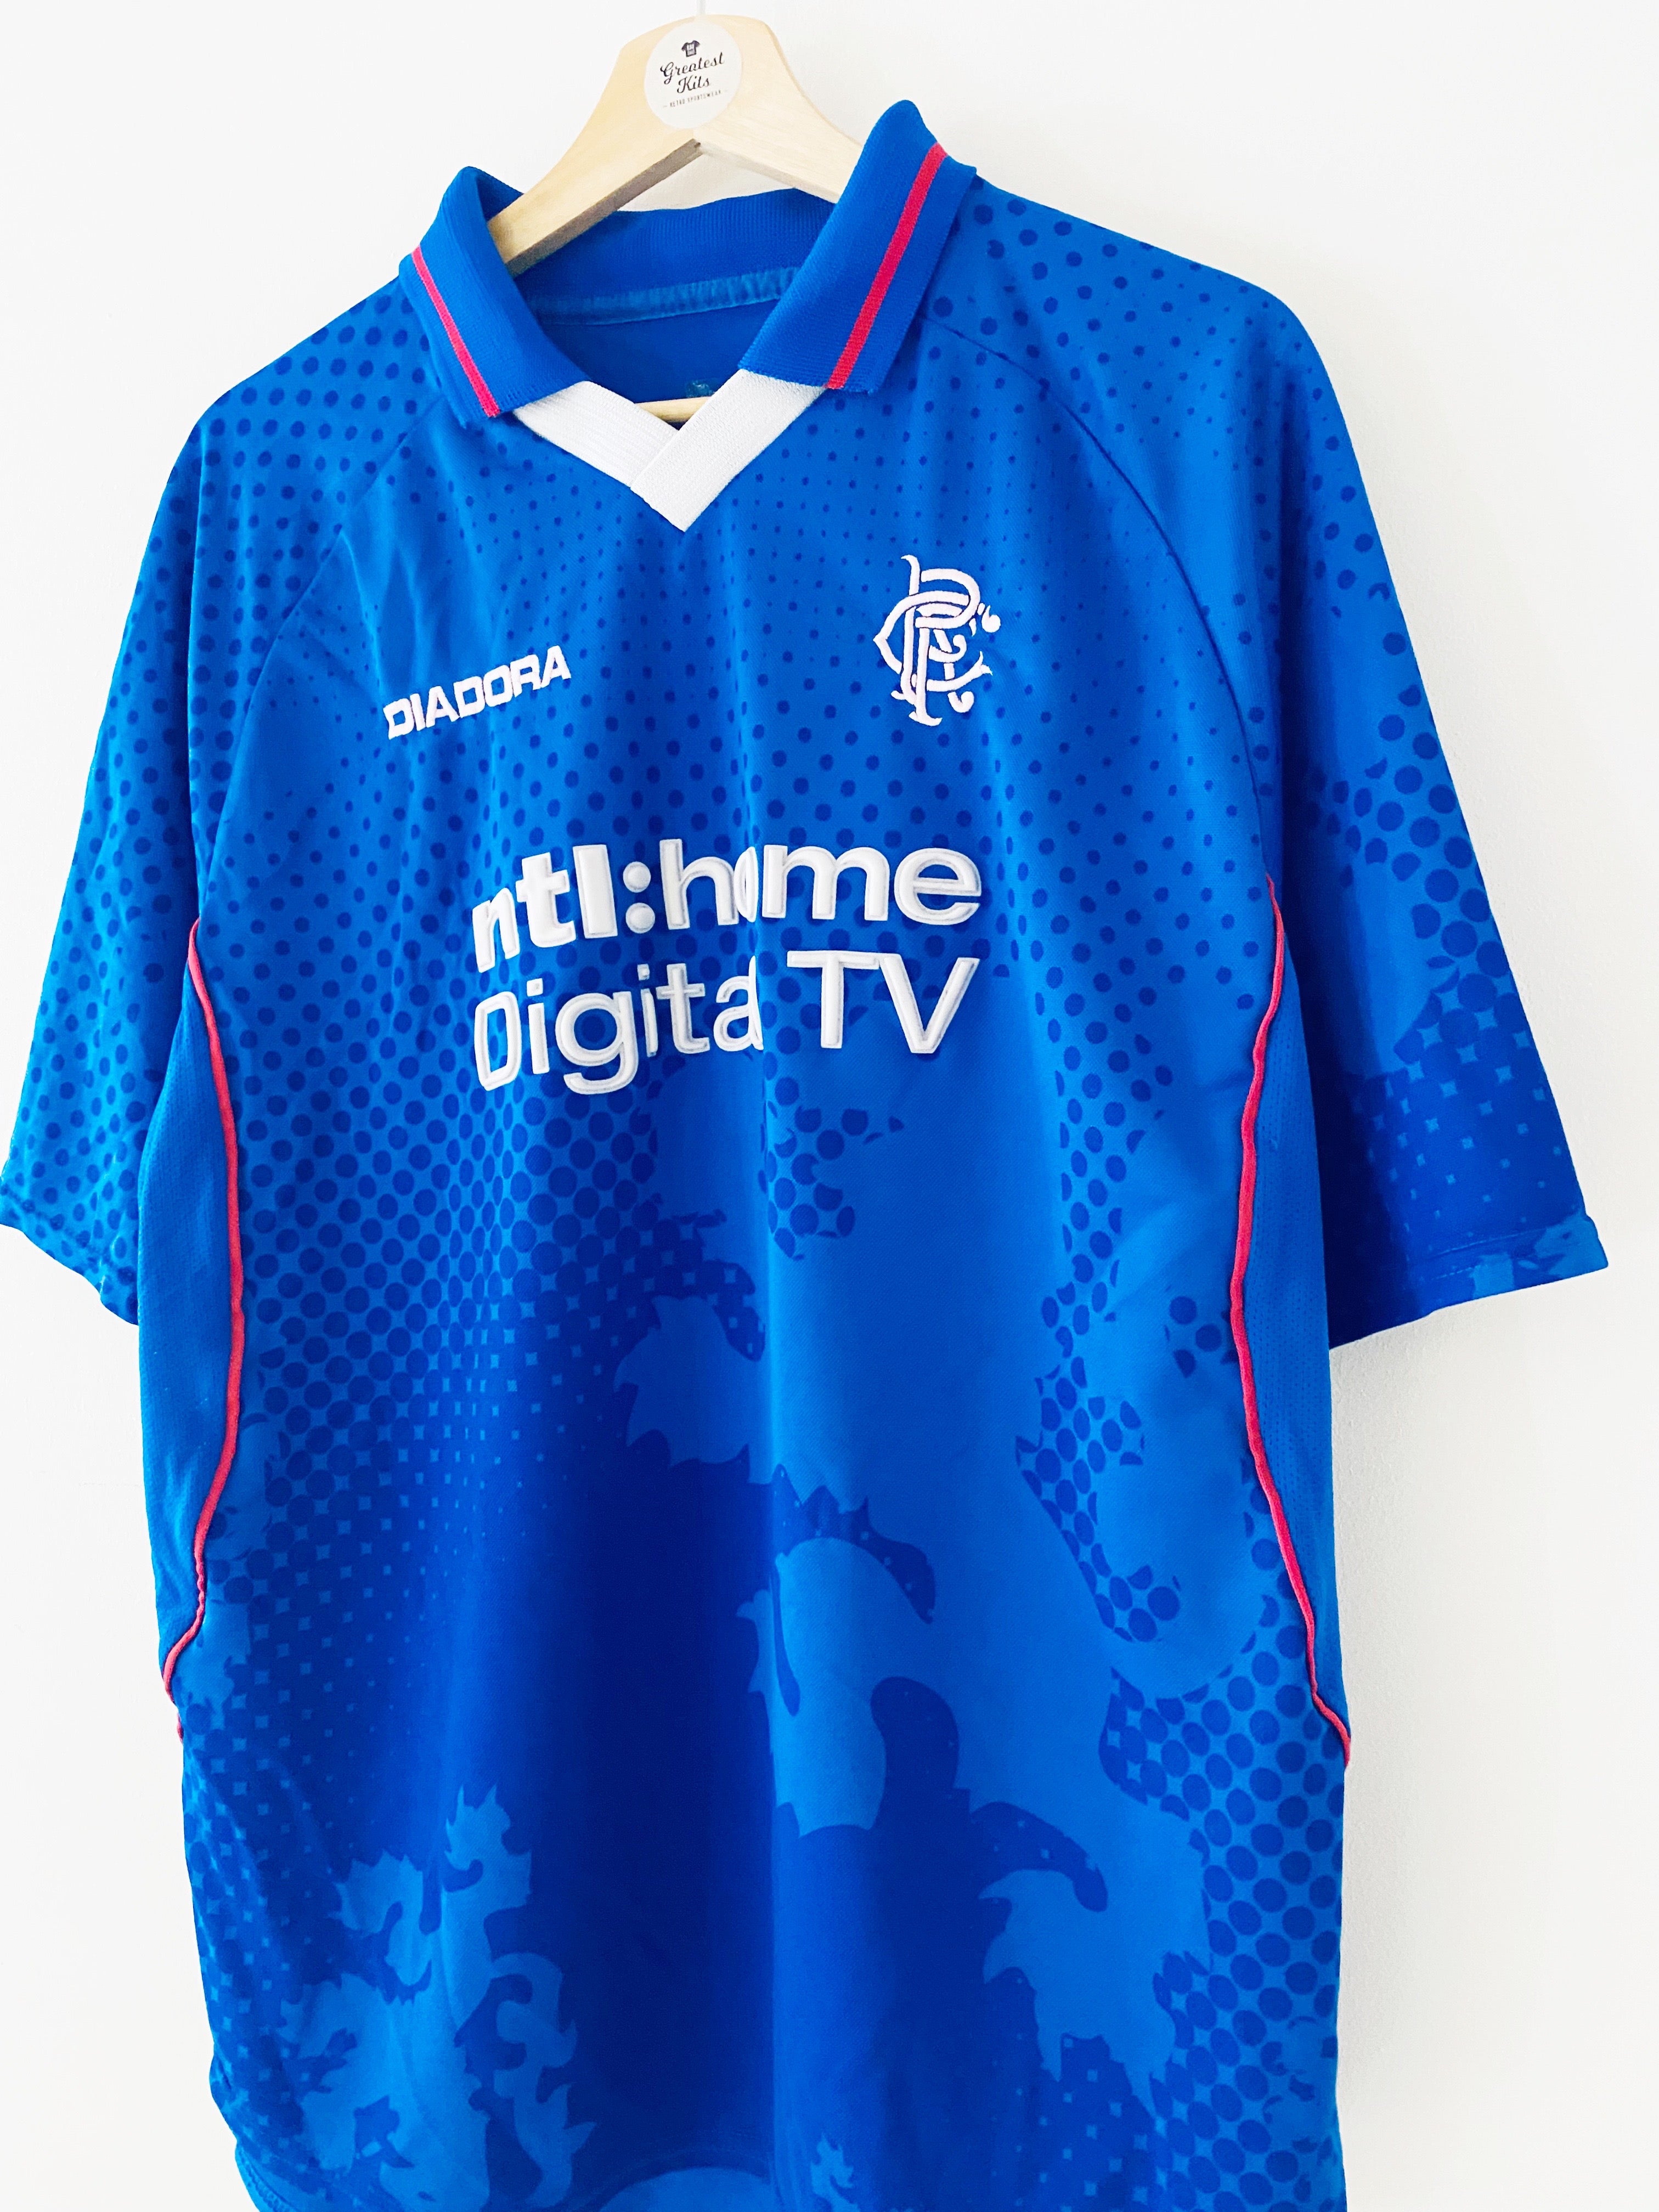 2002/03 Rangers Home Shirt (XL) 7/10